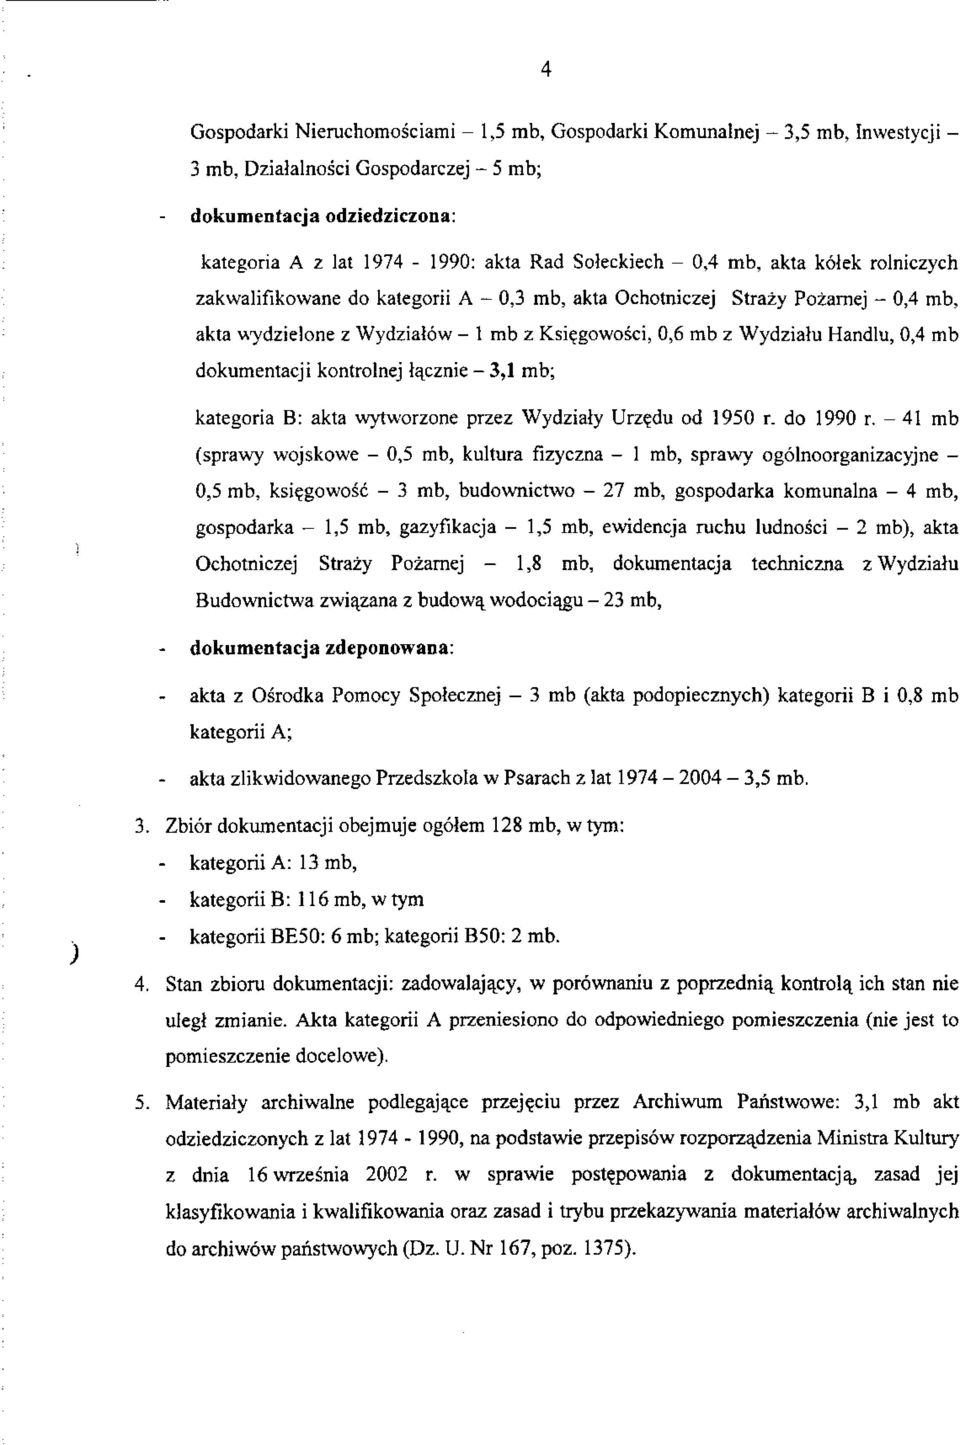 dokumentacji kontrolnej l^cznie - 3,1 mb; kategoria B: akta wytworzone przez Wydzialy Urz?du od 1950 r. do 1990 r.